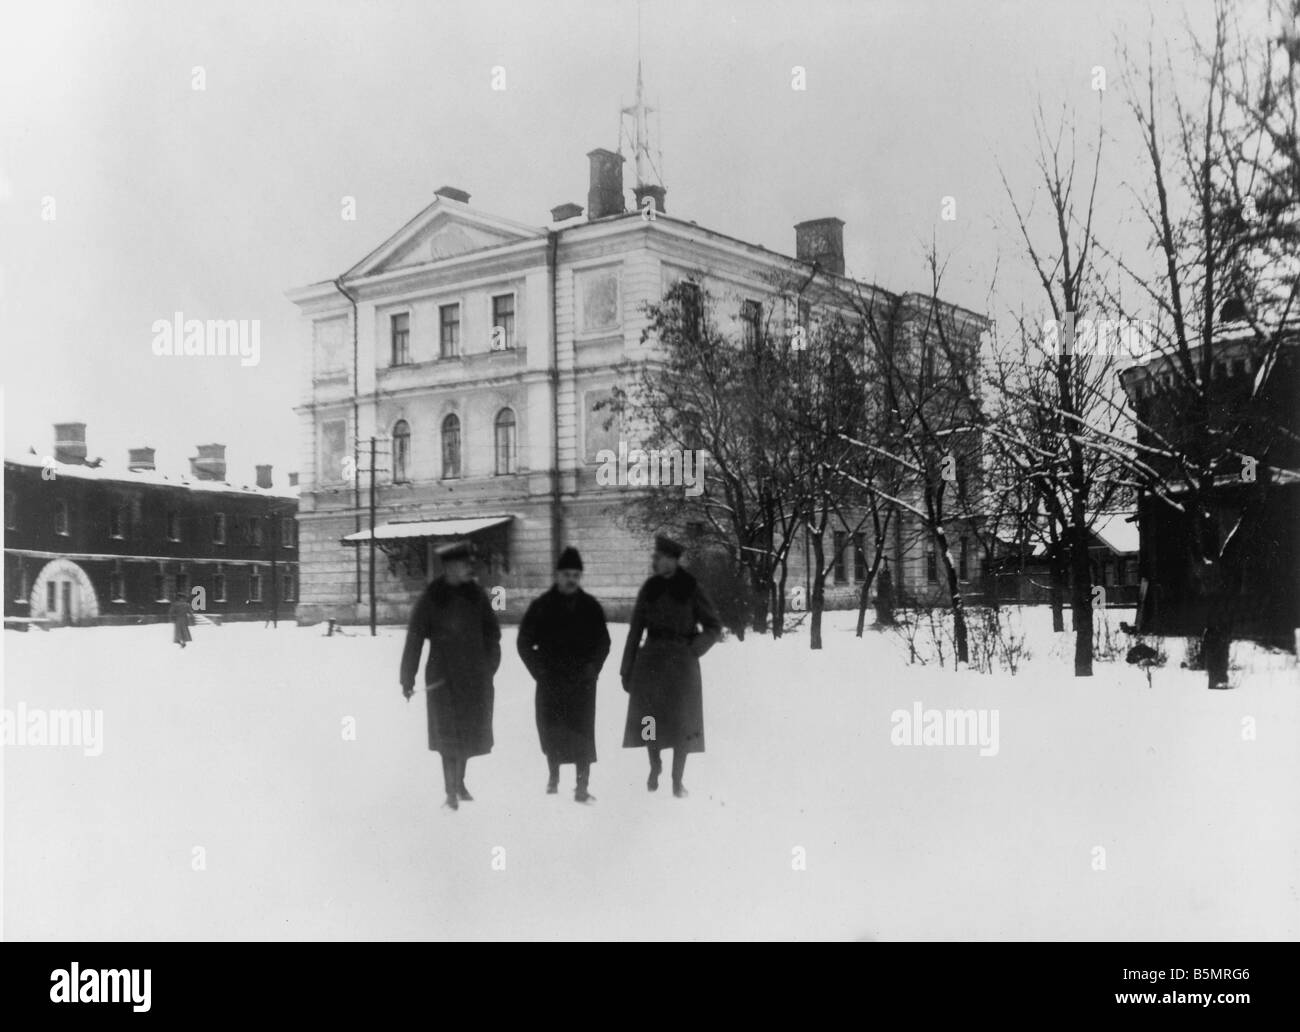 9 1917 12 15 A1 2 edifici Conferenza 1917 Guerra Mondiale 1 1914 18 Russo armistizio tedesco di Brest Litowsk 15 dicembre 1917 e Foto Stock